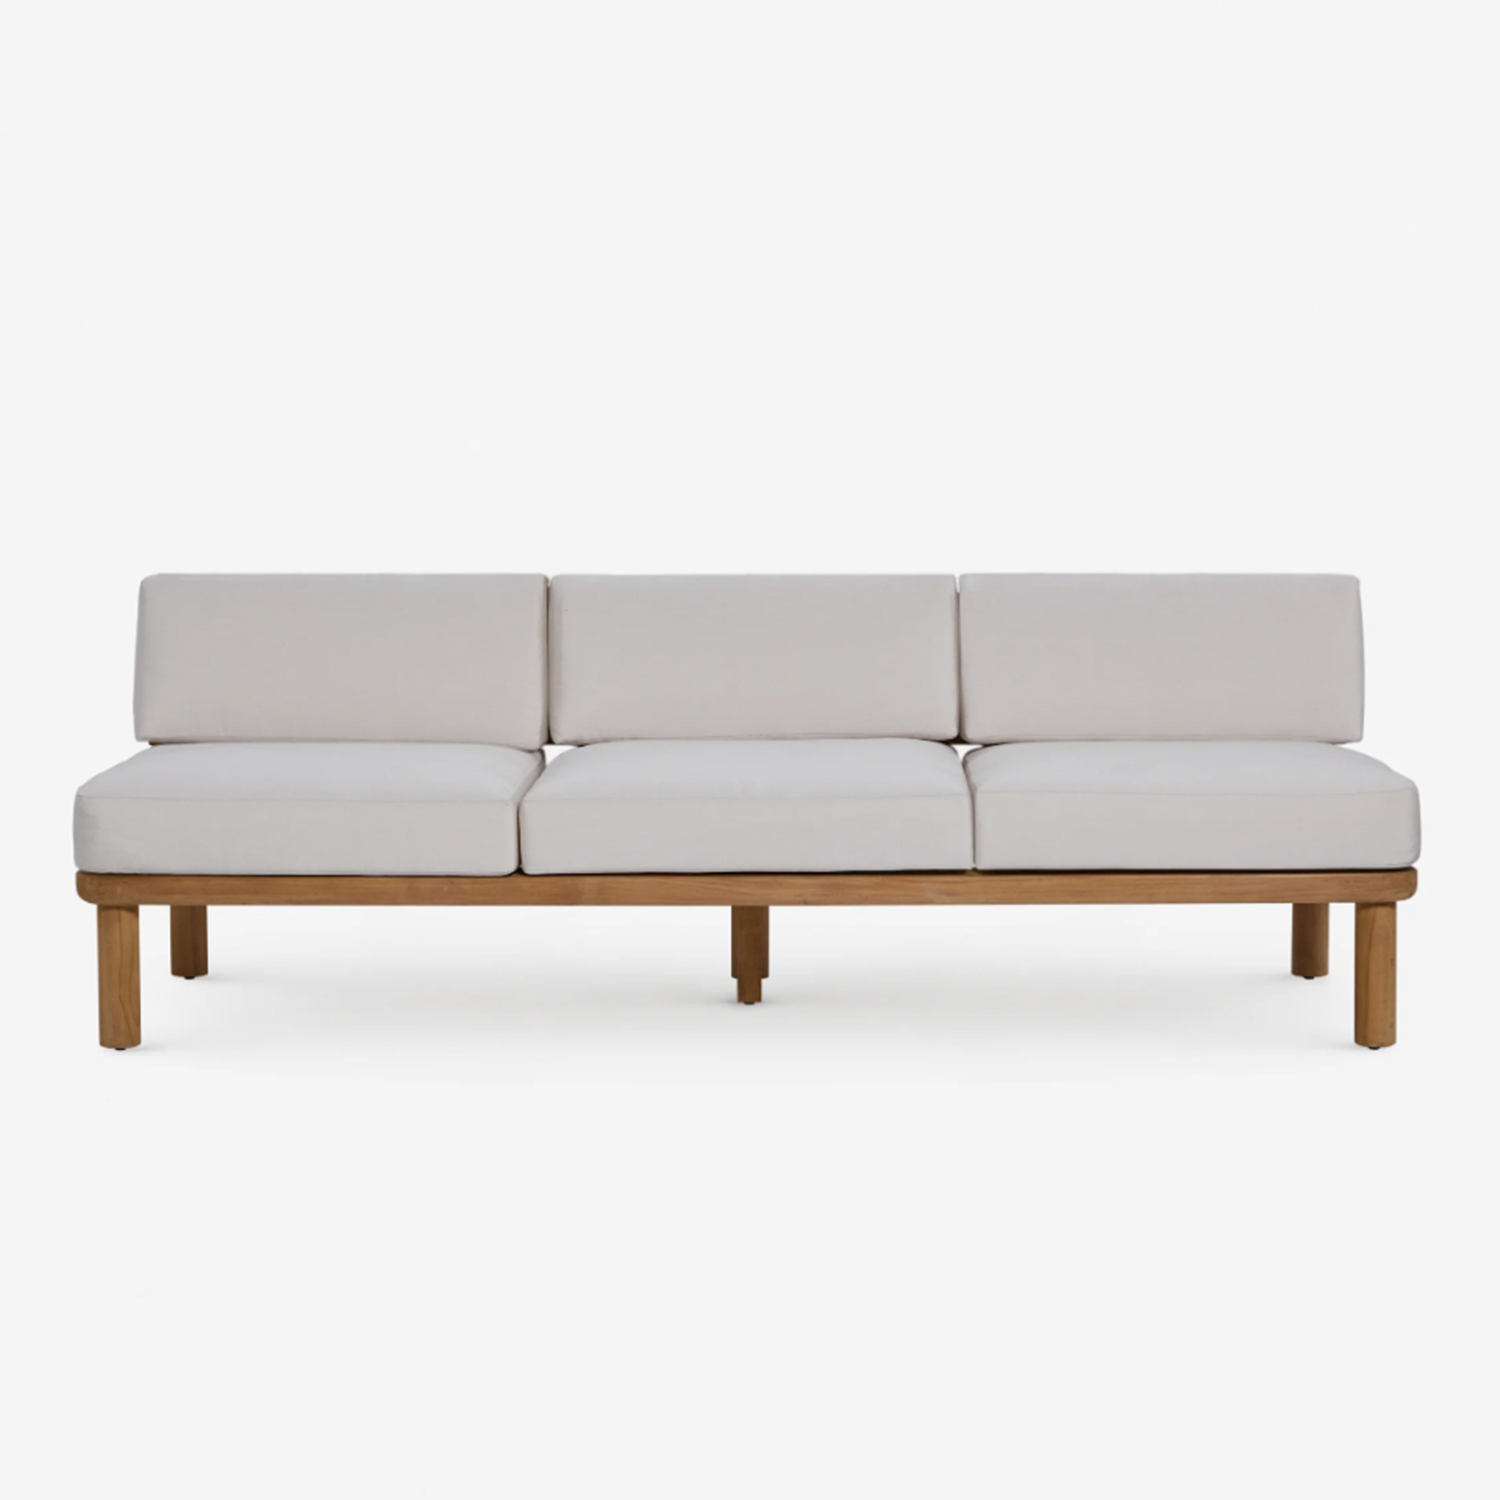 Ryann Indoor/Outdoor Sofa